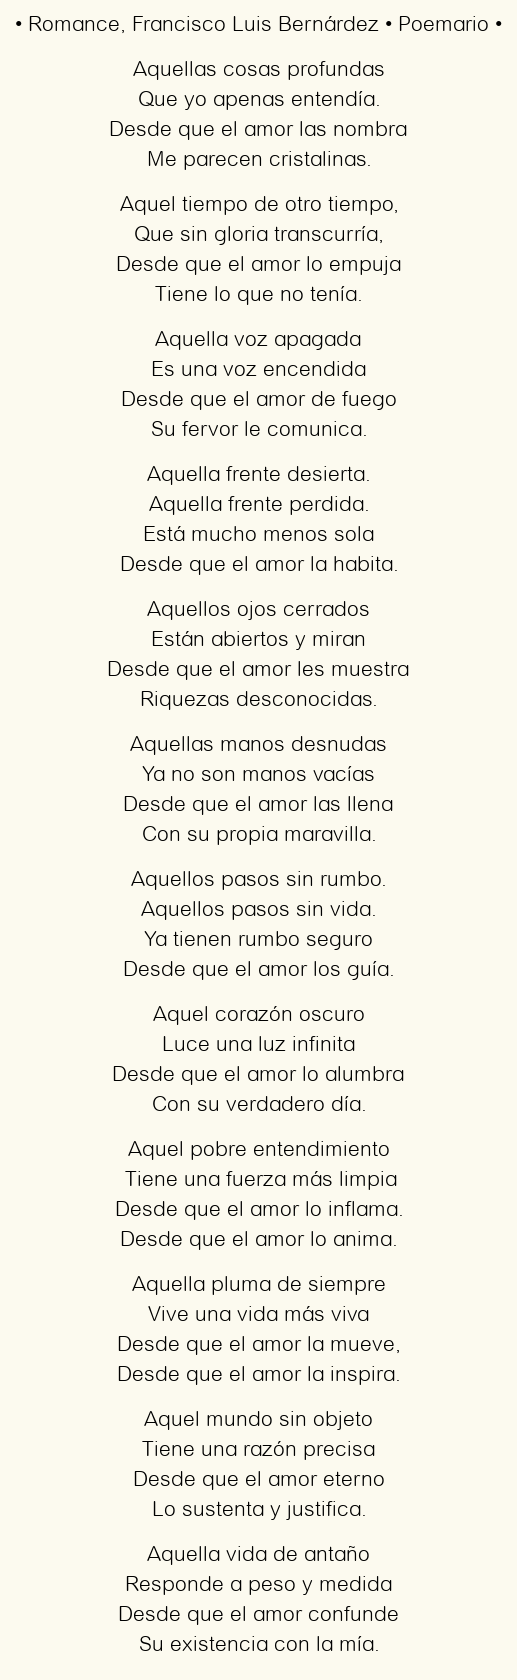 Imagen con el poema Romance, por Francisco Luis Bernárdez